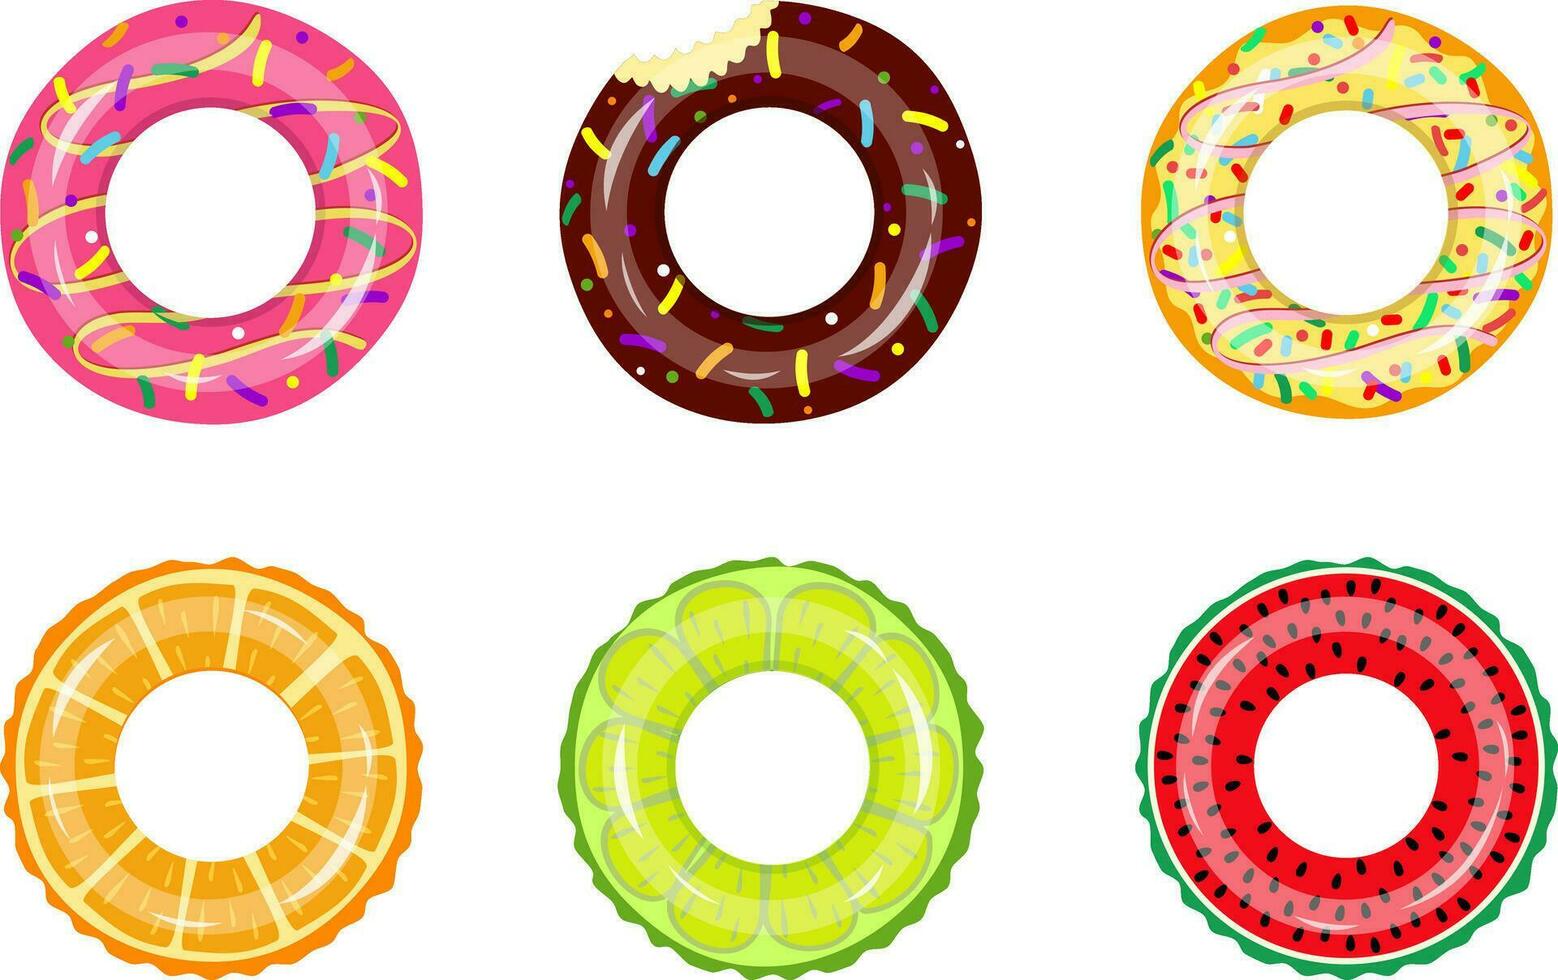 kleurrijk rubber zwemmen ringen reeks voor water drijvend. zwemmen cirkel redder in nood verzameling voor kind veilig. rubber ringen vector